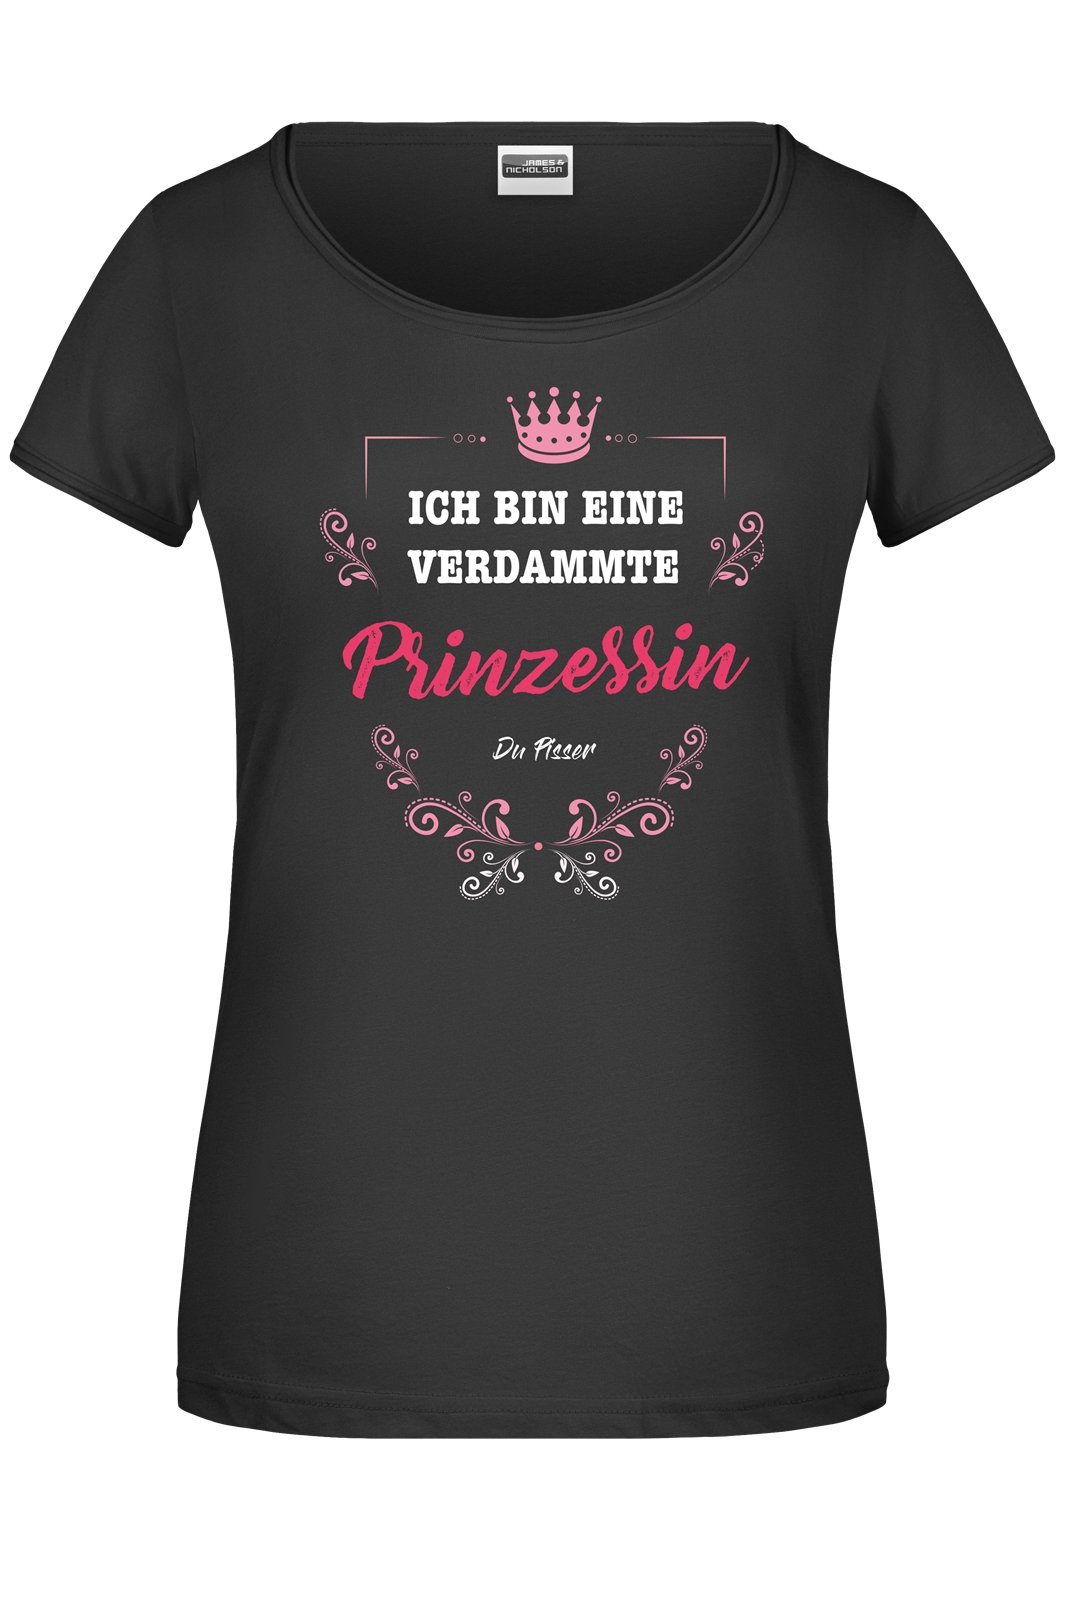 Bild: T-Shirt - Ich bin eine verdammte Prinzessin Geschenkidee